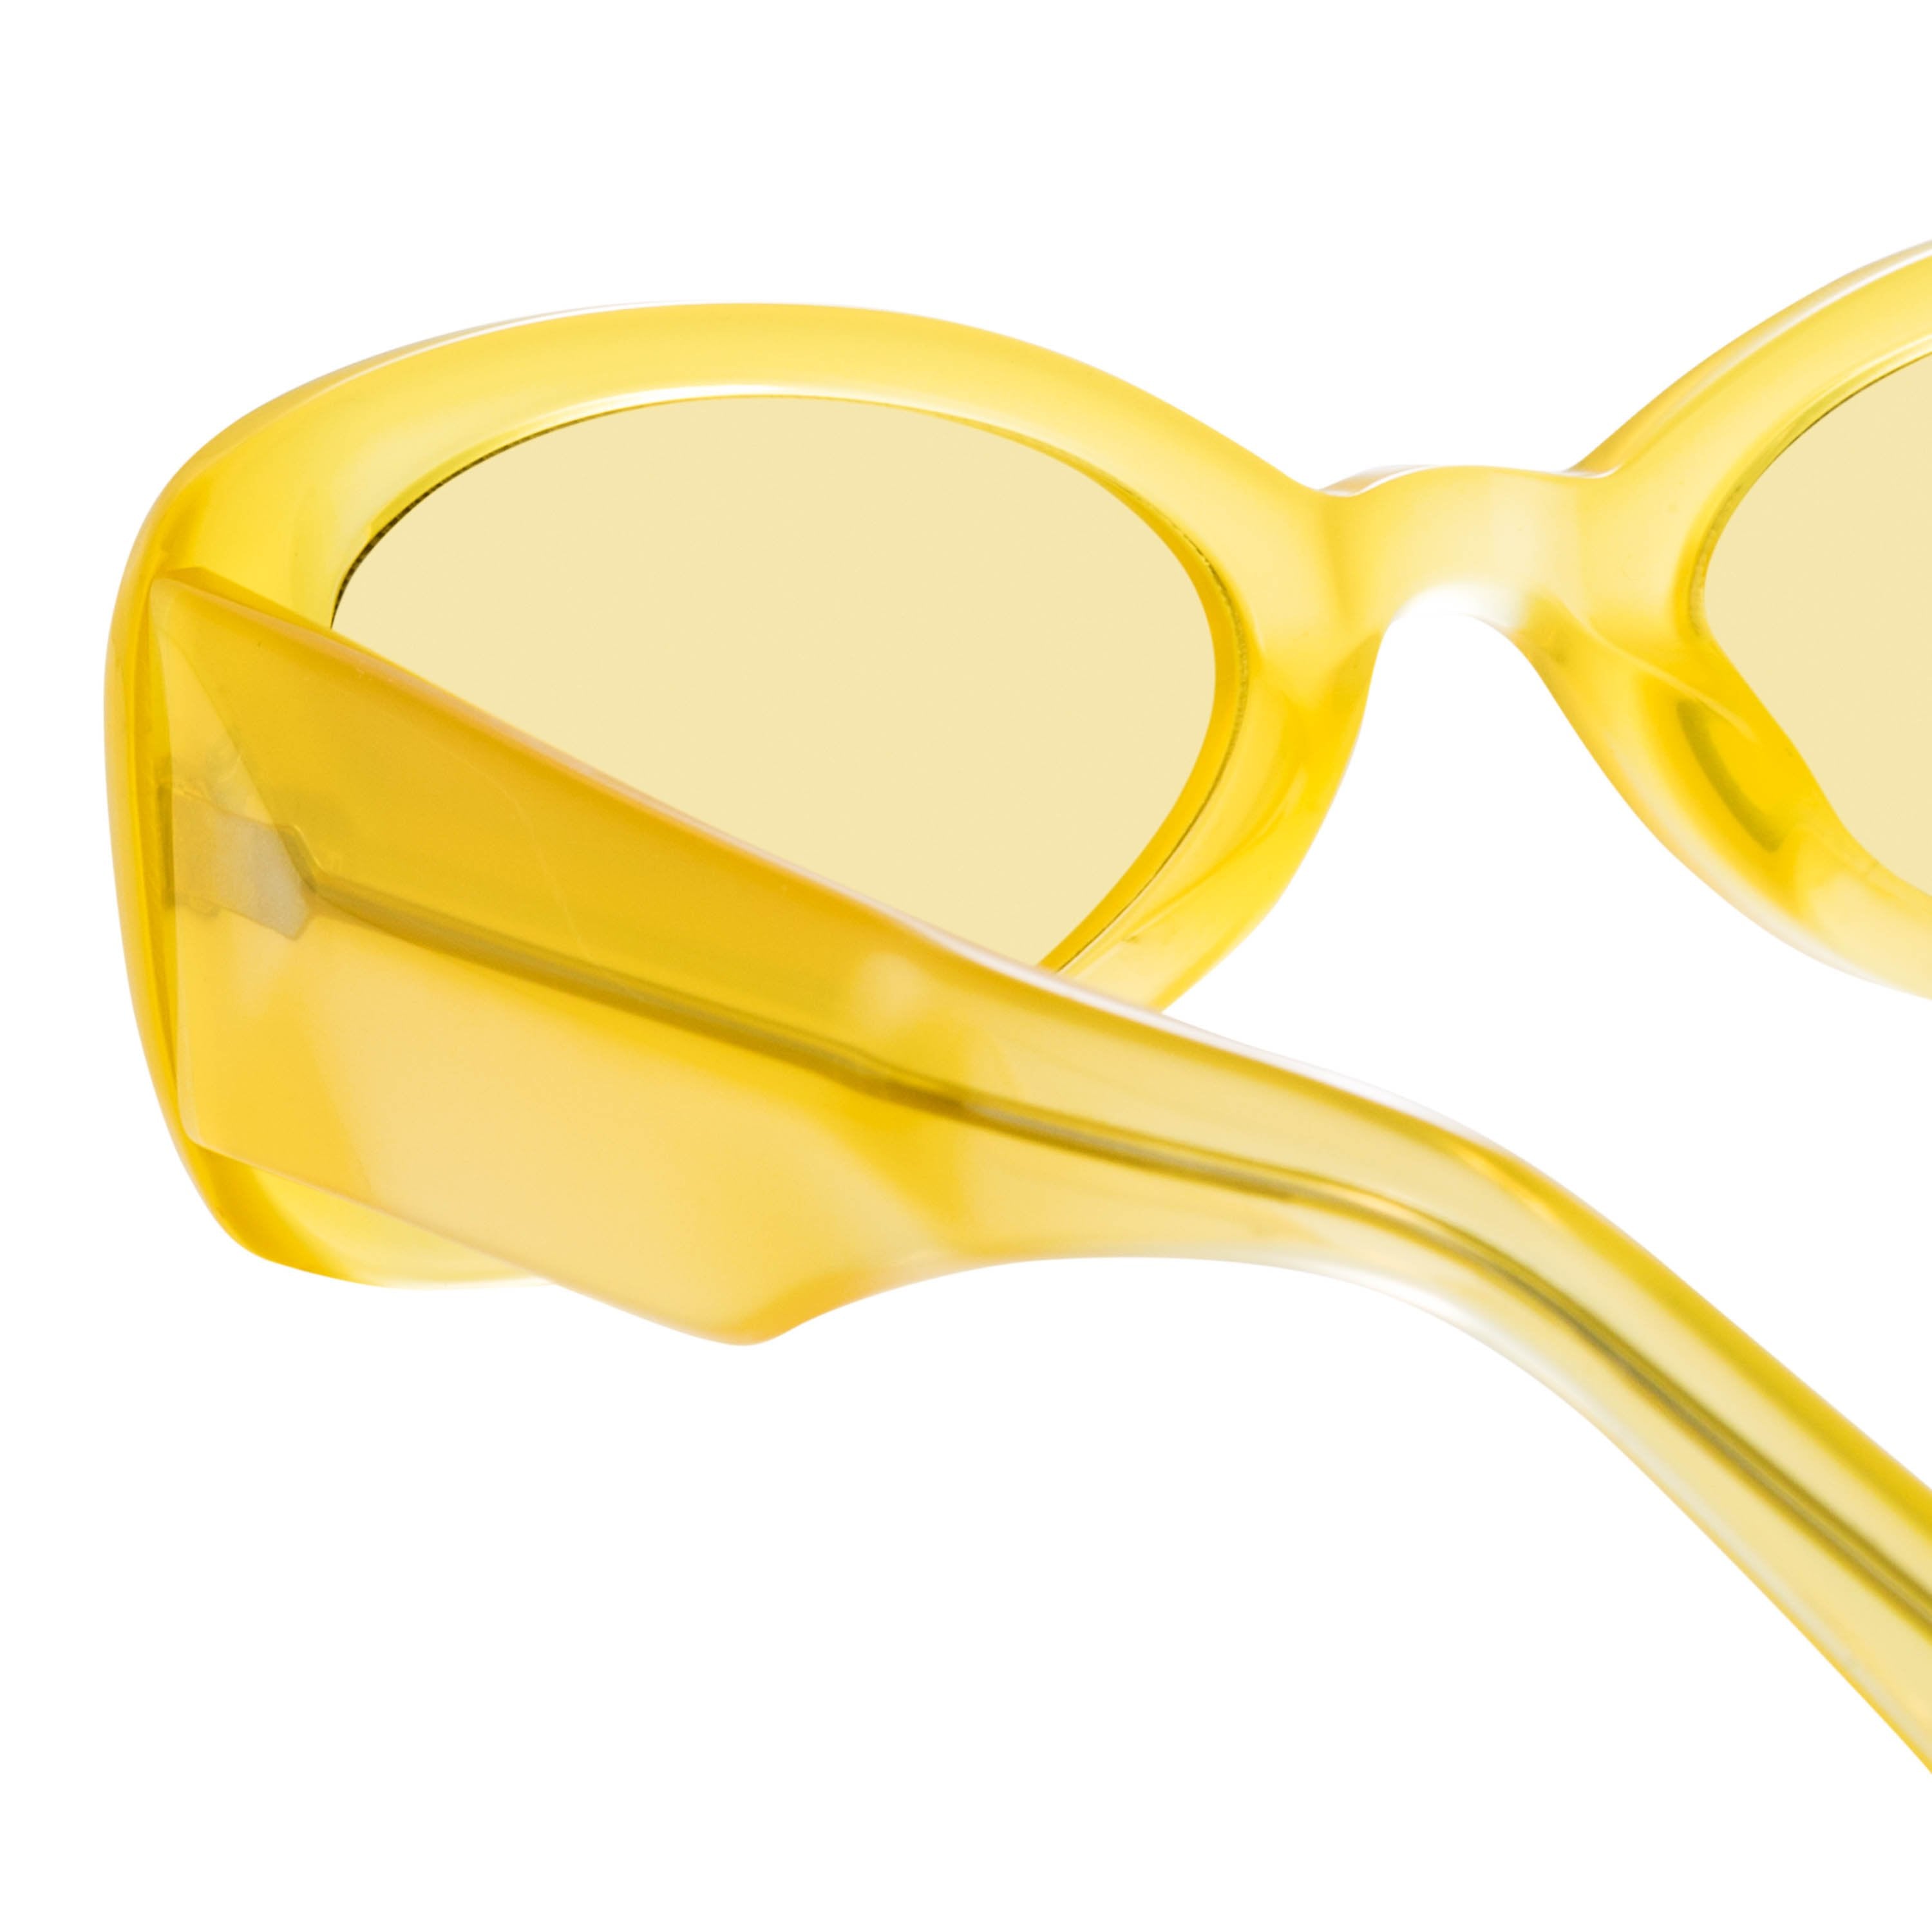 Color_DVN204C2SUN - Dries van Noten 204 Aviator Sunglasses in Yellow